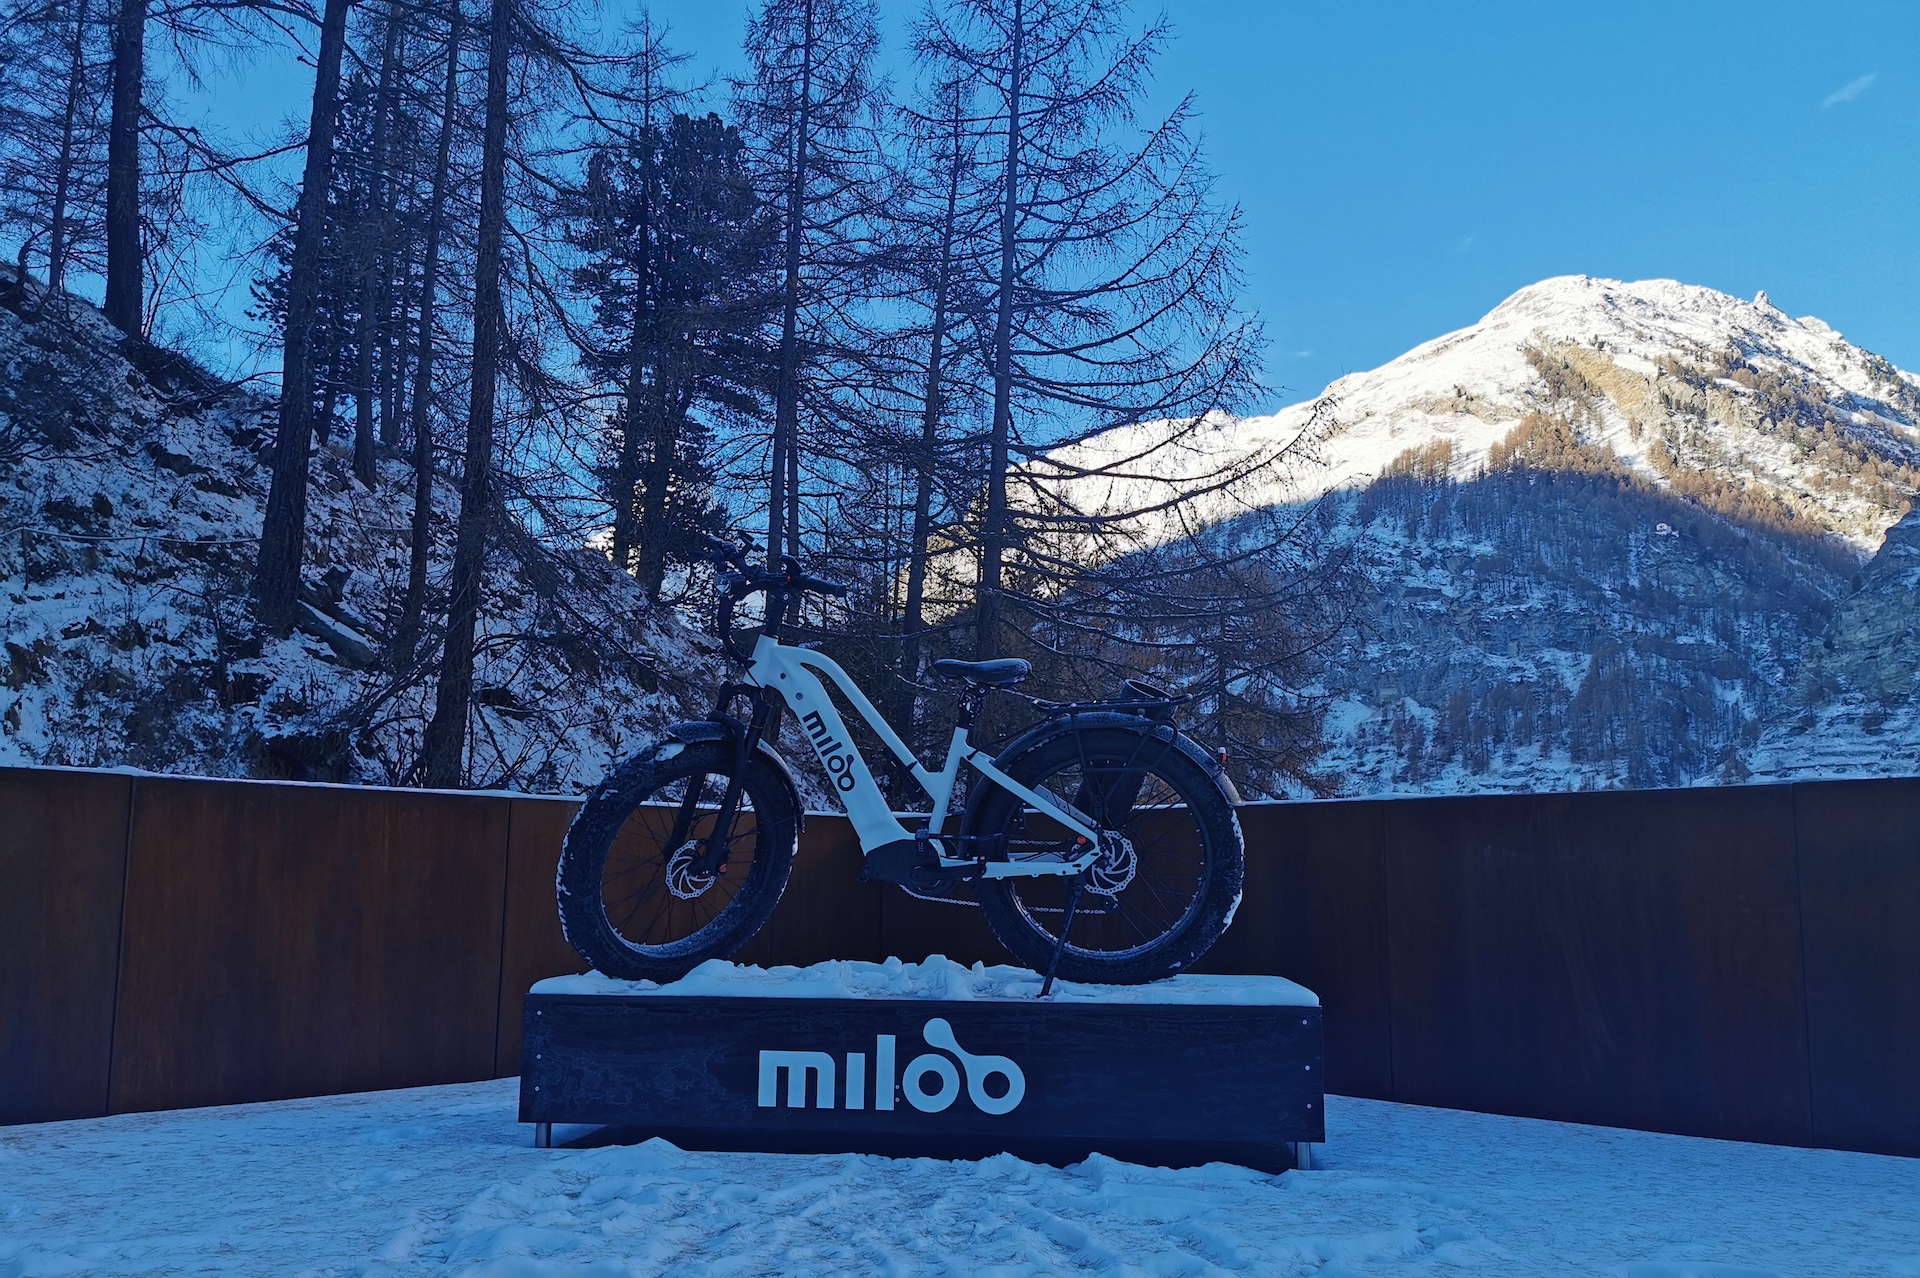 Miloo Bike at CERVO